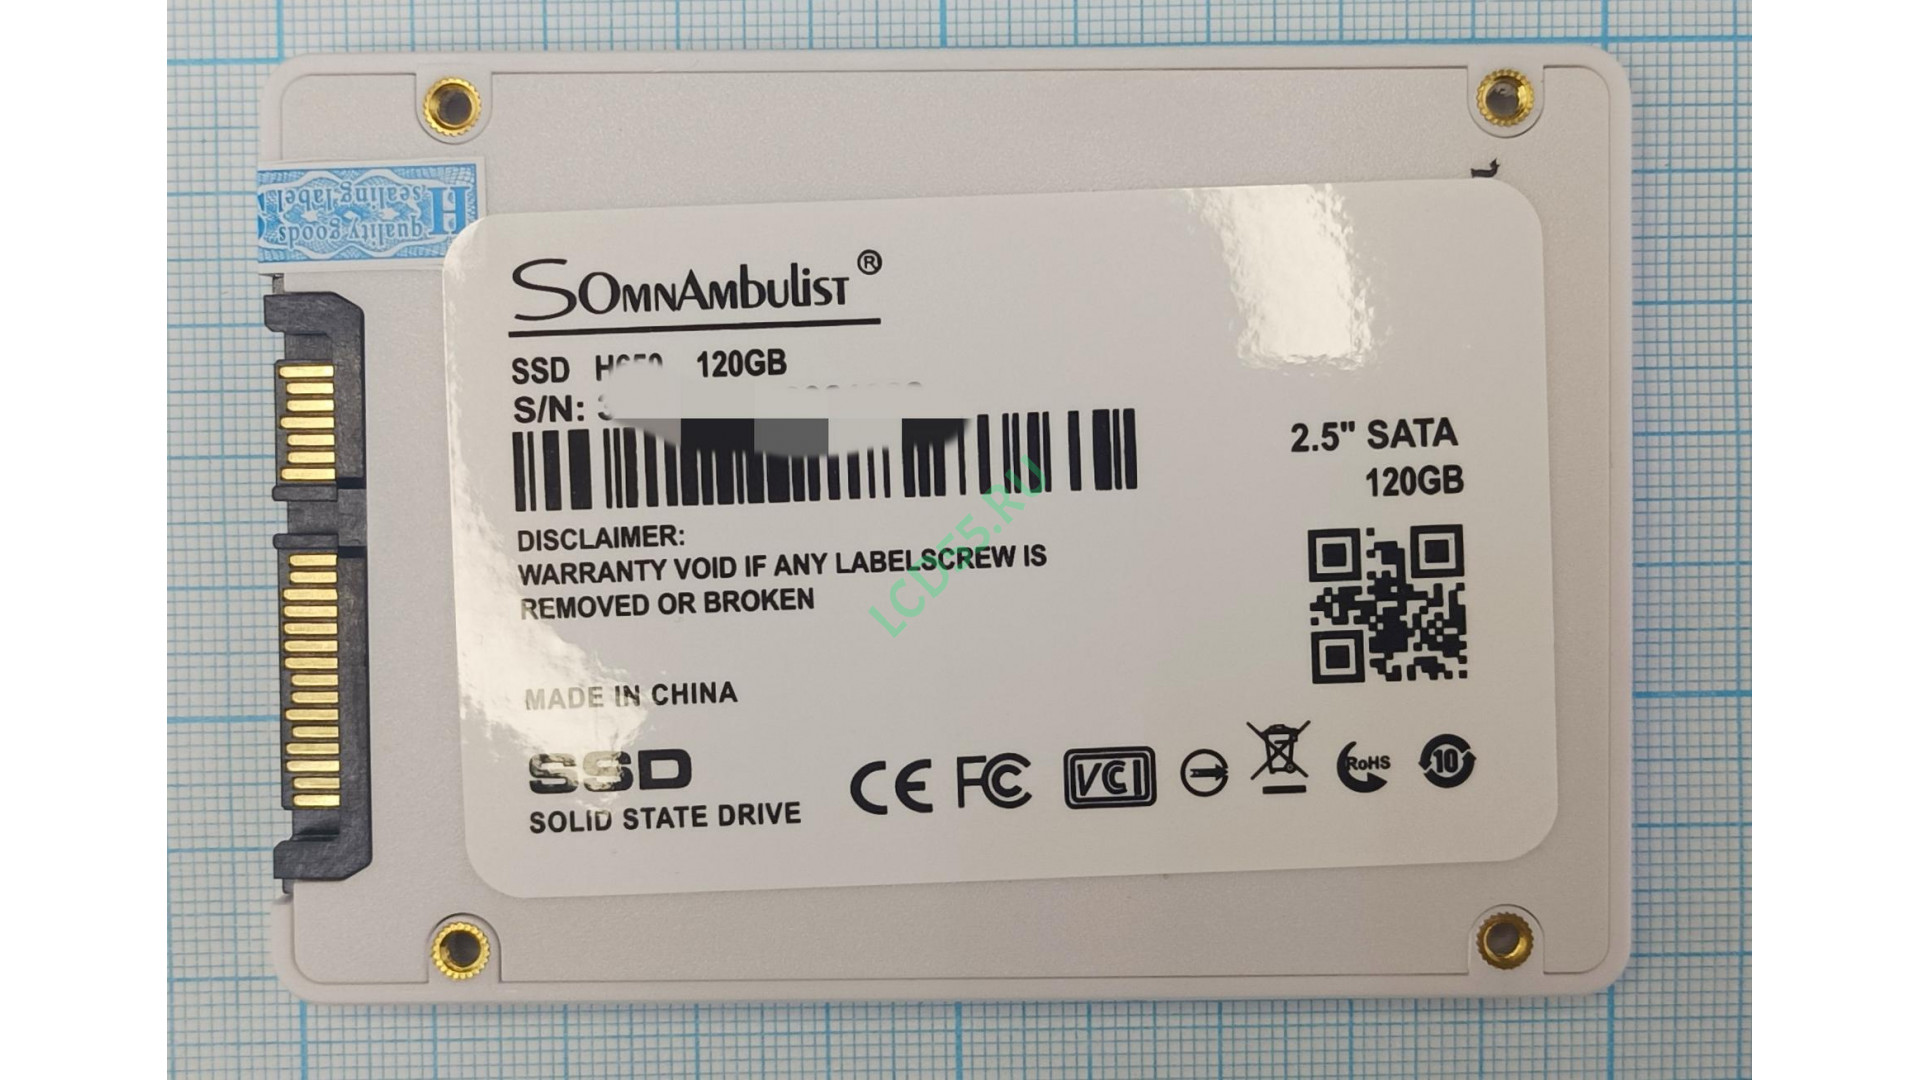 SSD 120GB SomnAmbuList SATA-III 2.5"